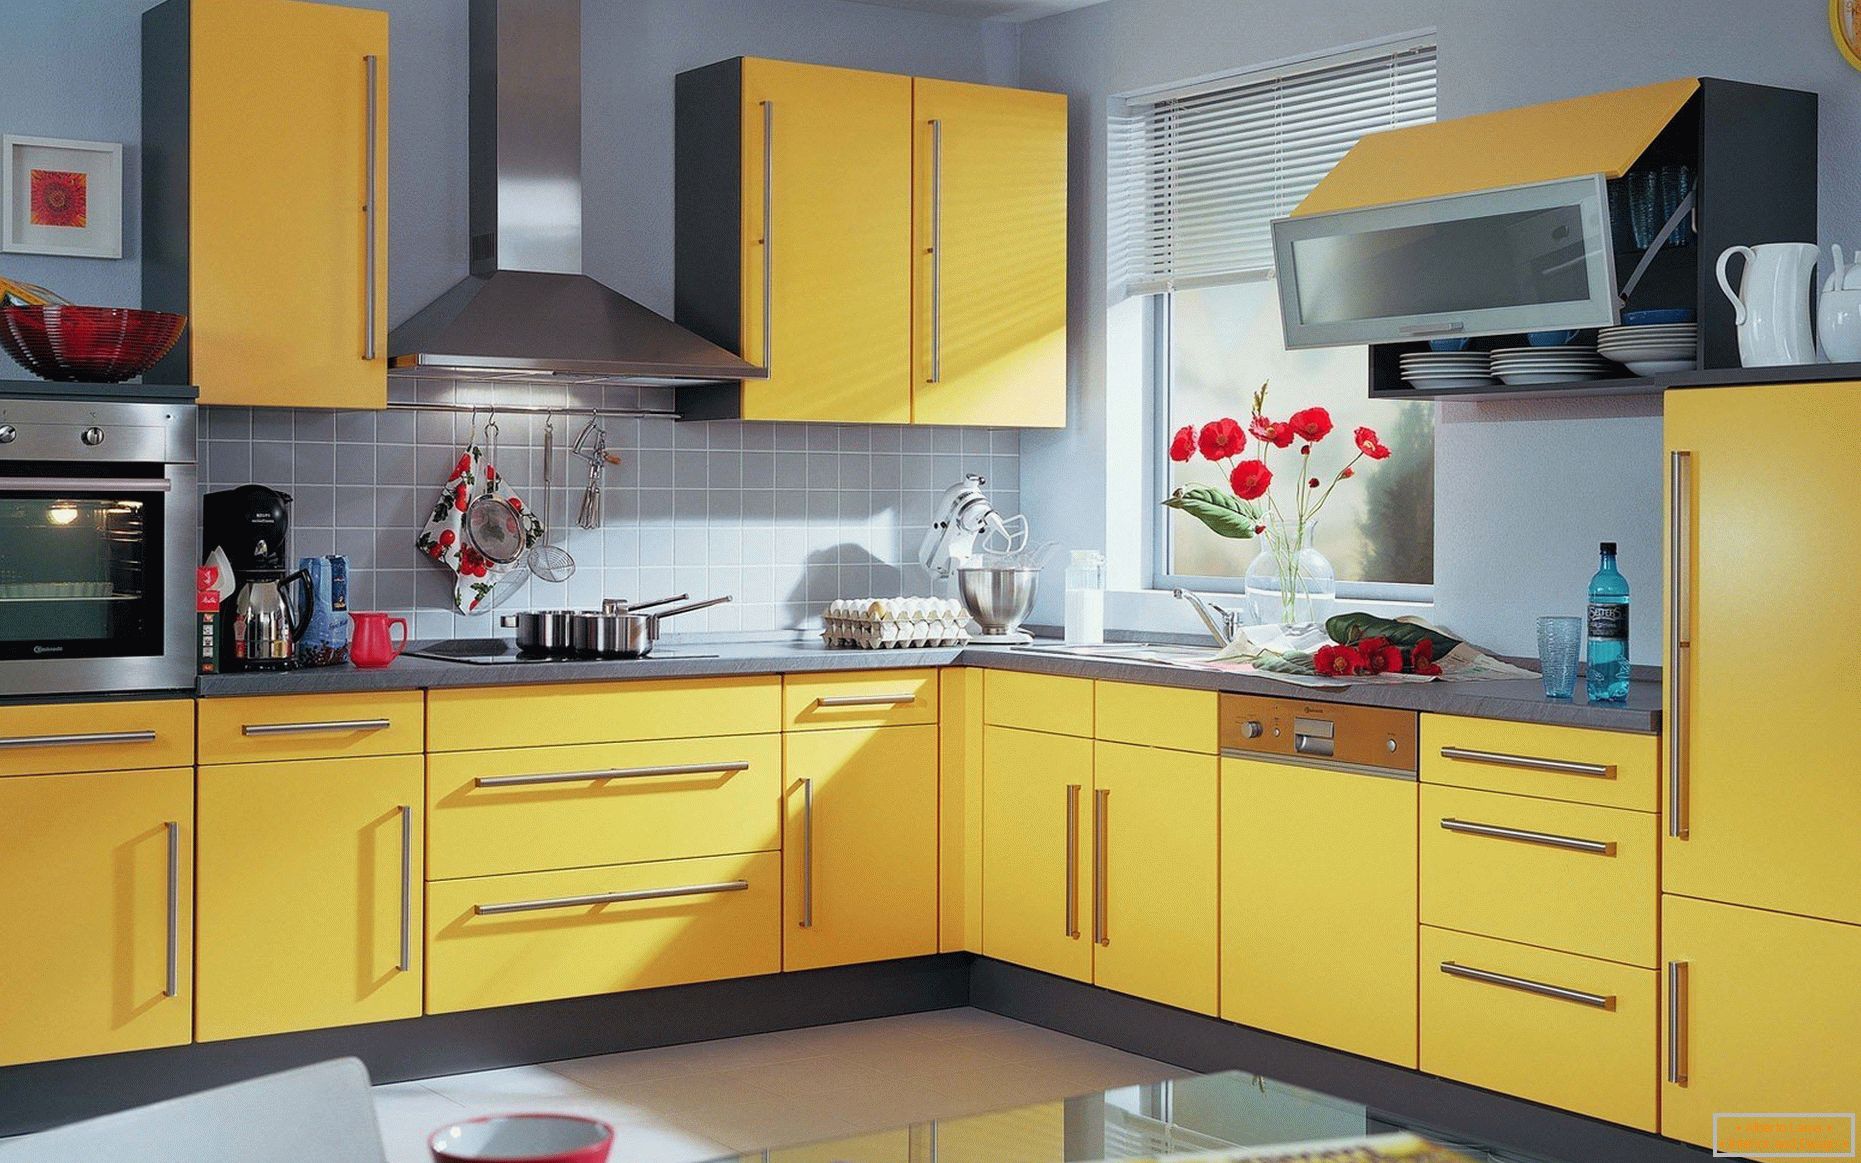 Wände in Pastellfarben, gelbe Küche